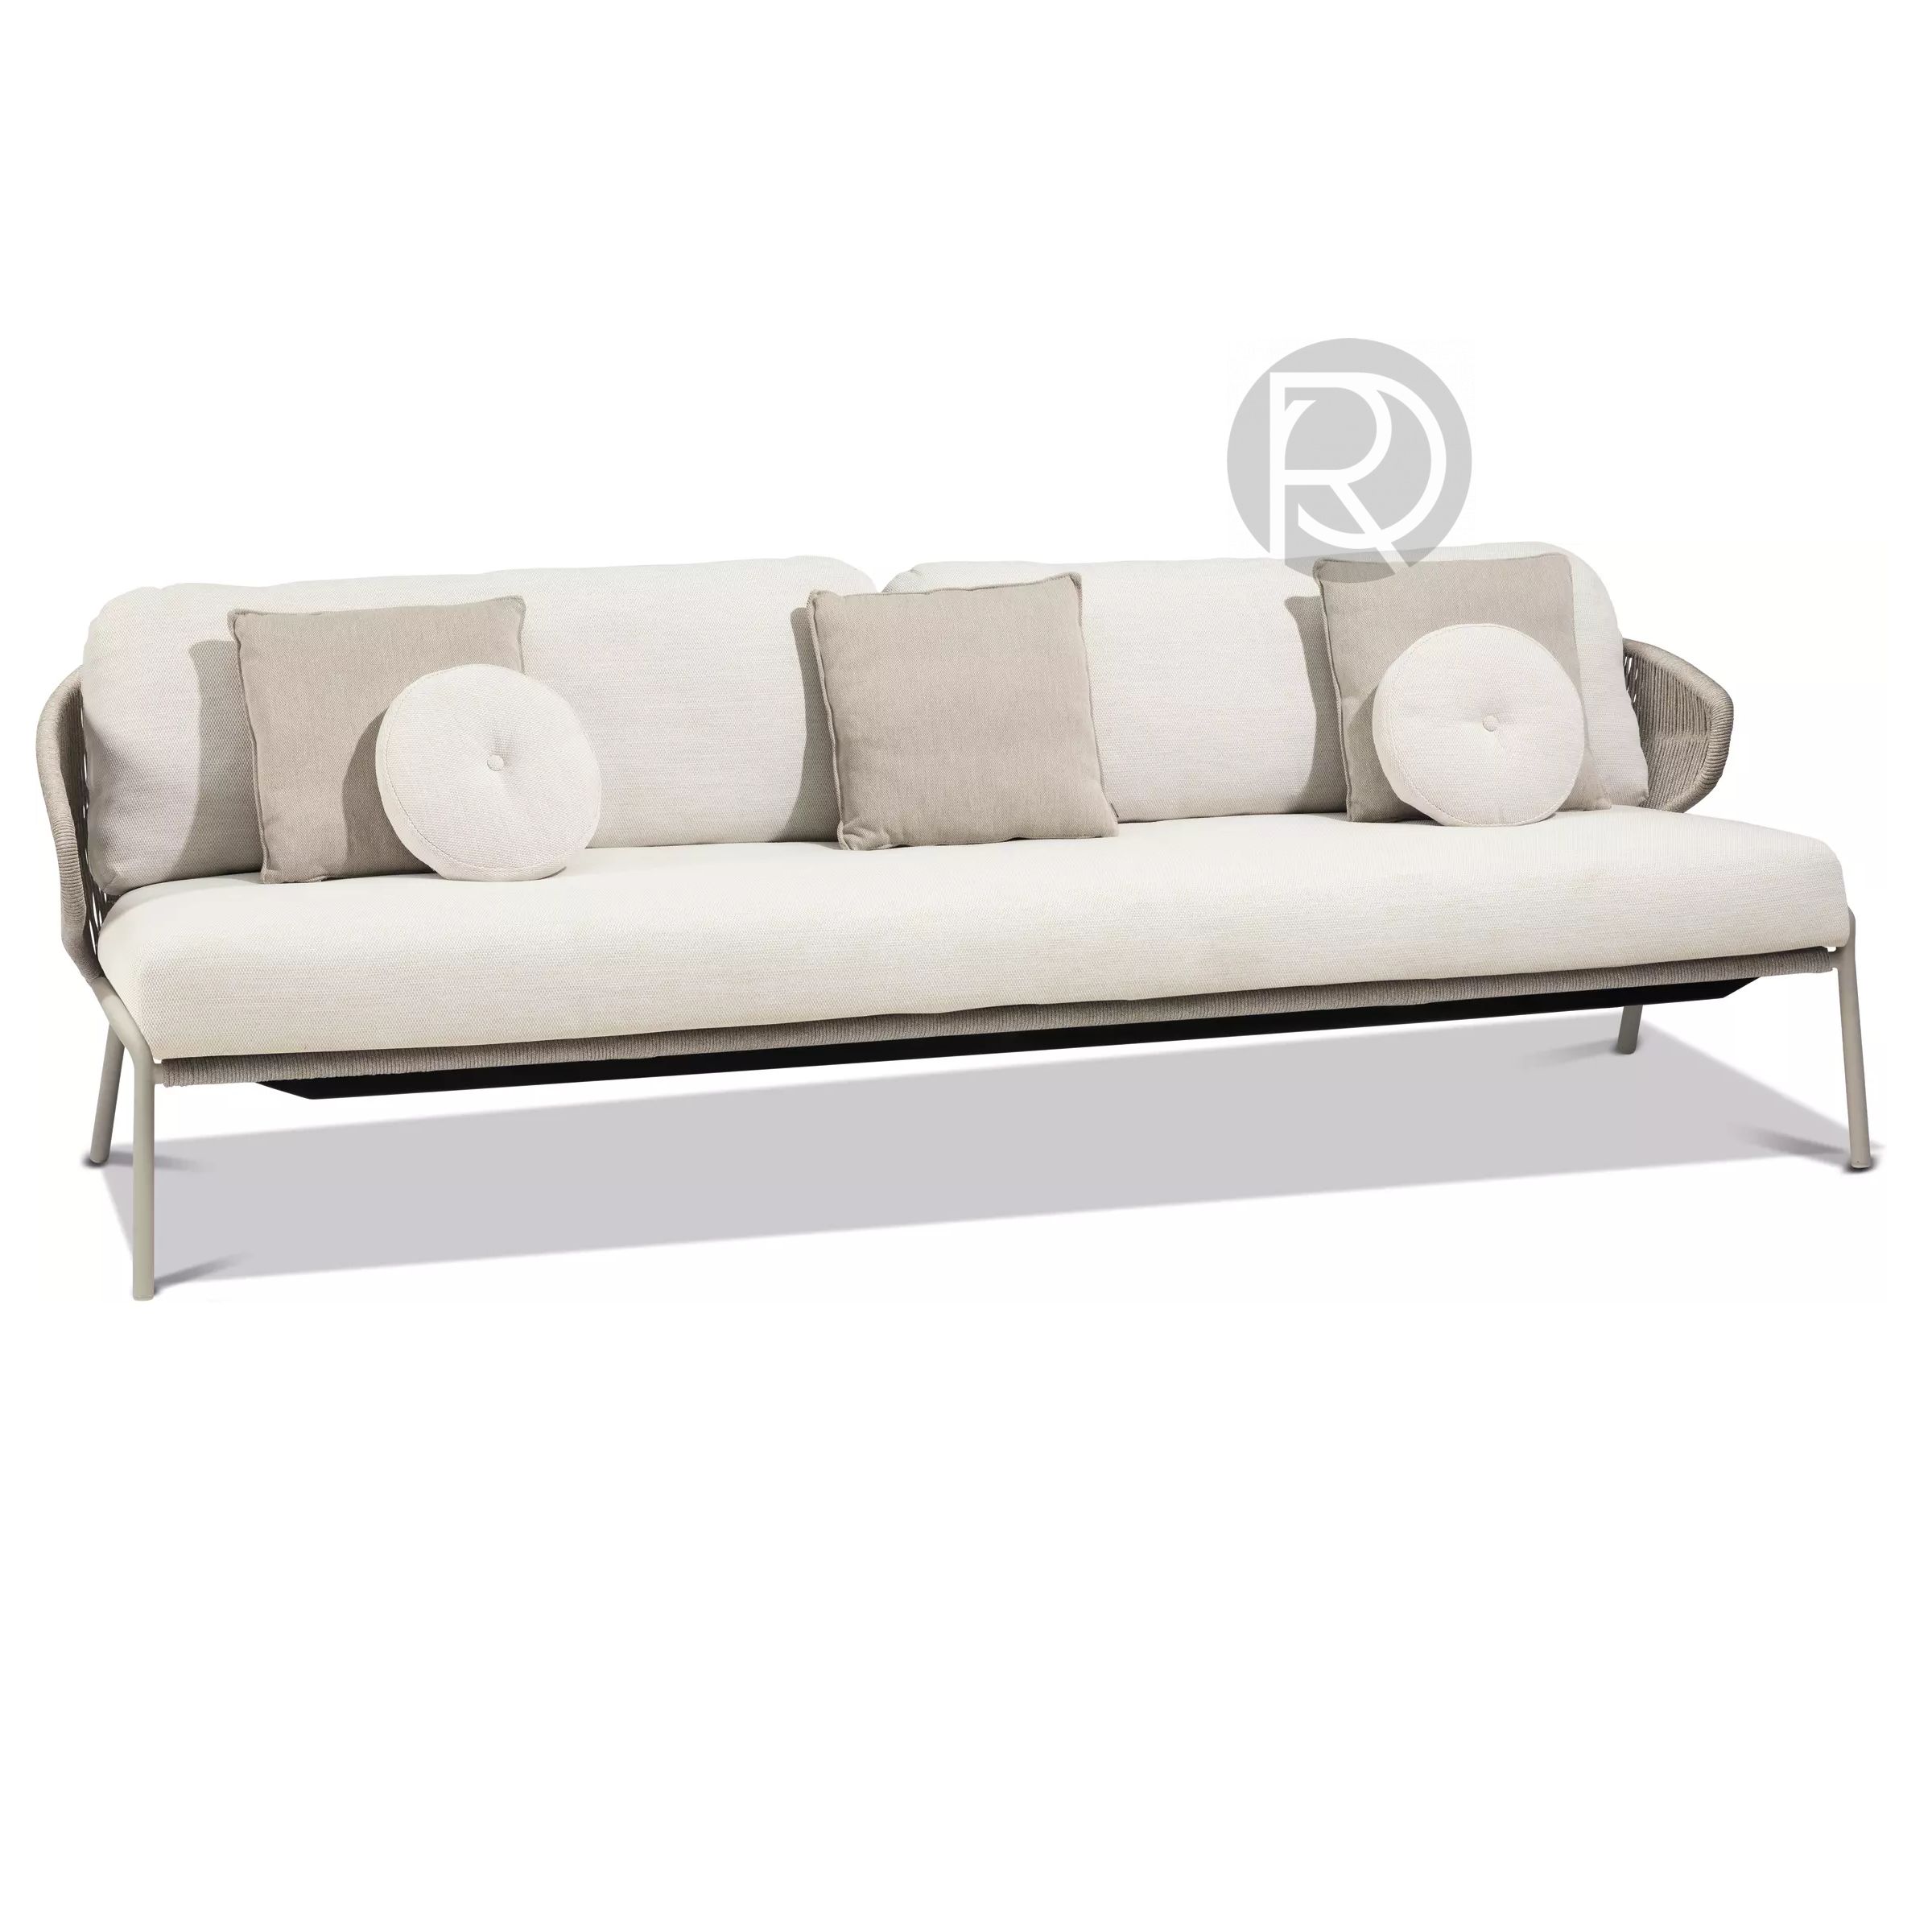 Sofa RADOC by Manutti